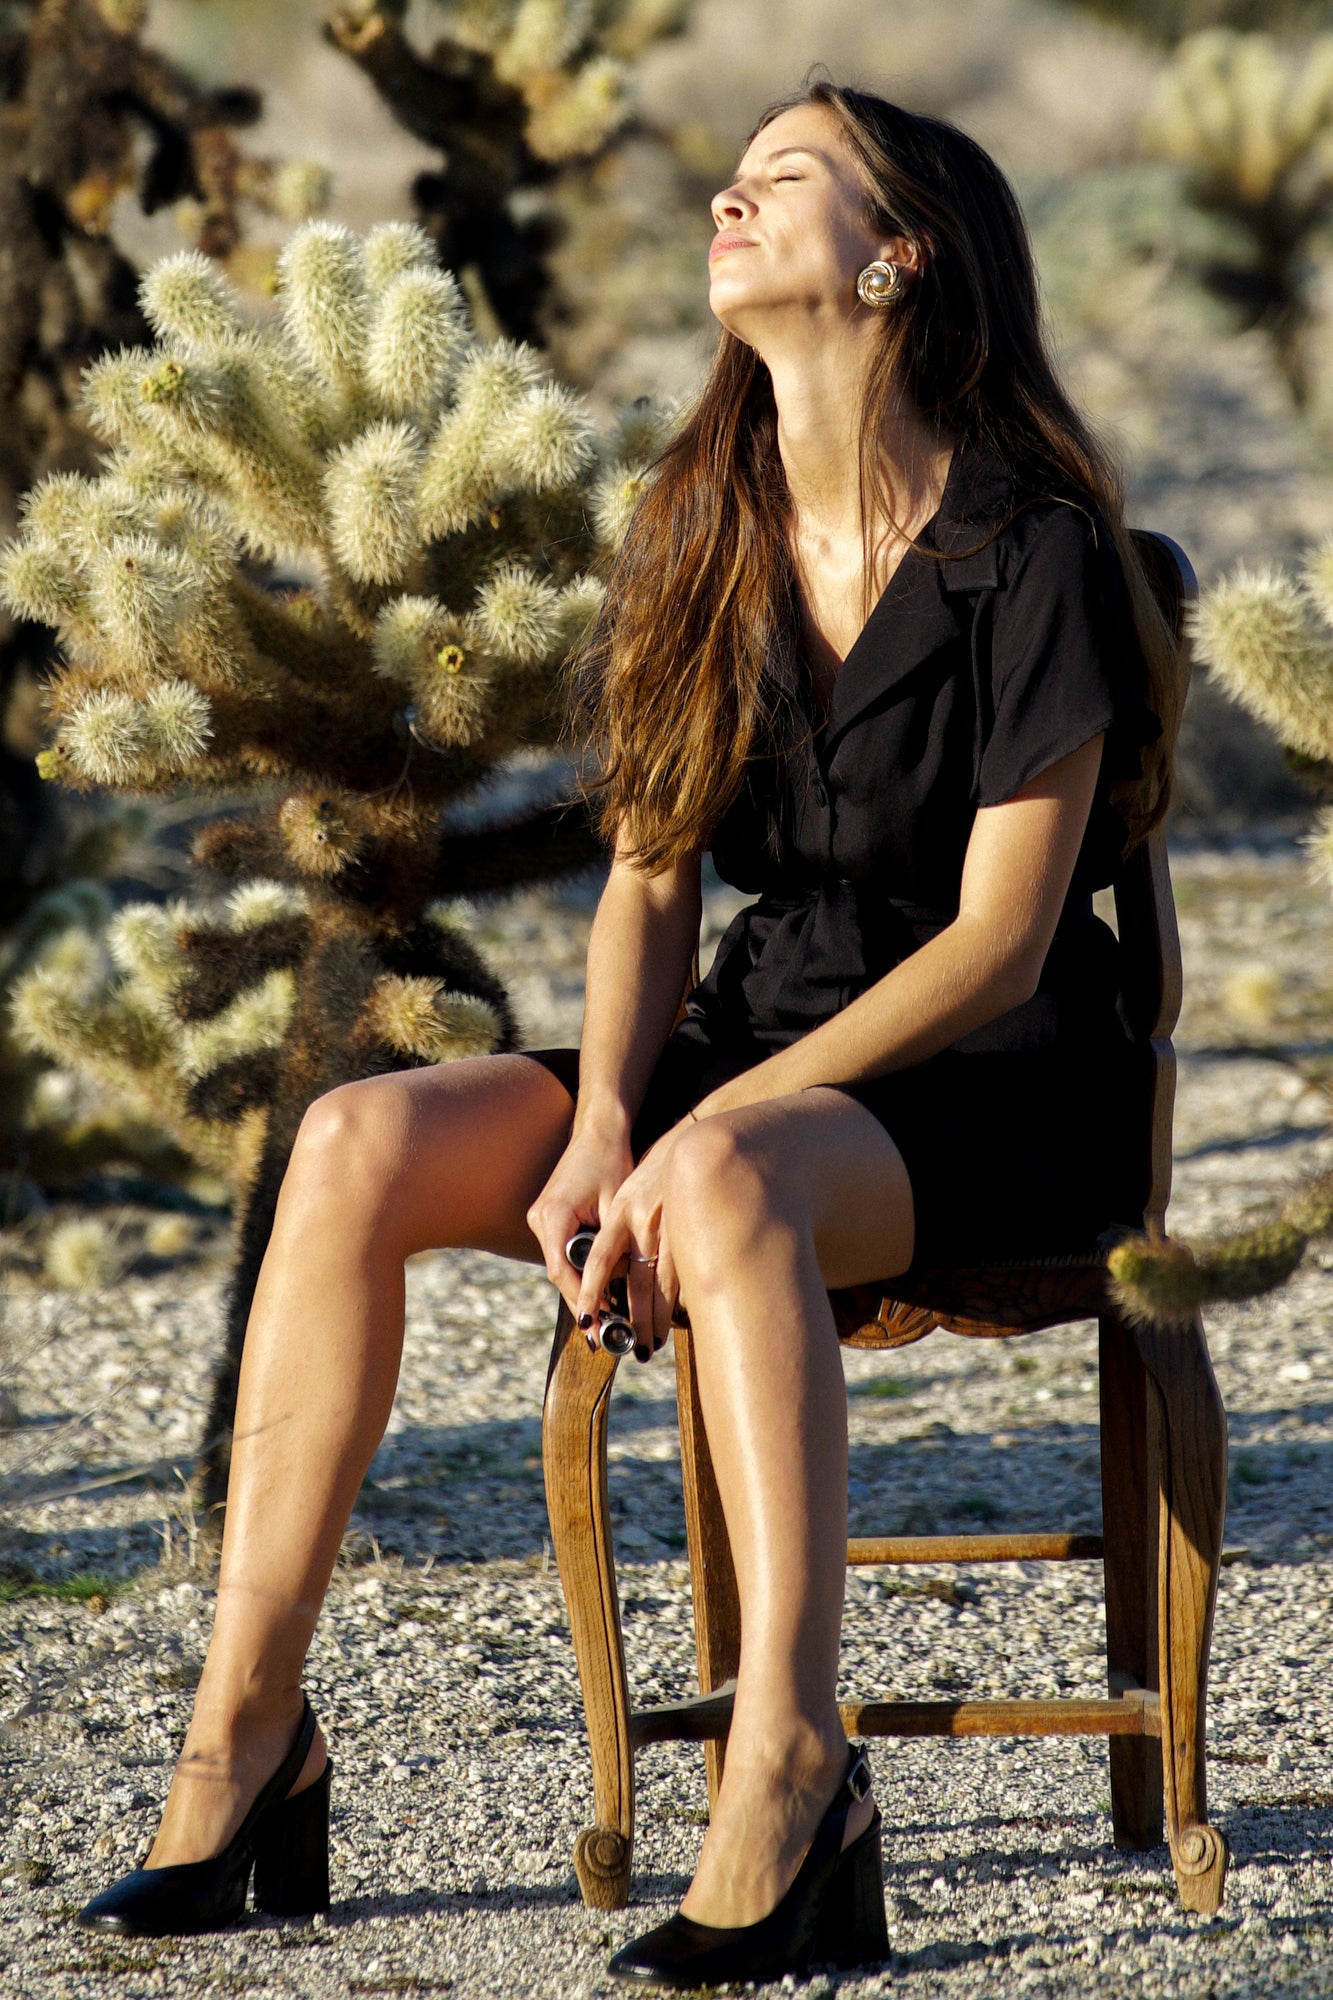 Femme sur une chaise et tournants sa tête pour bronzer au soleil. Elle porte une robe courte noire, avec des manches courtes et un col tailleur minimaliste. La robe se ferme par des boutons recouverts de tissu sur le devant, et elle est composée de polyester soyeux et fluide.